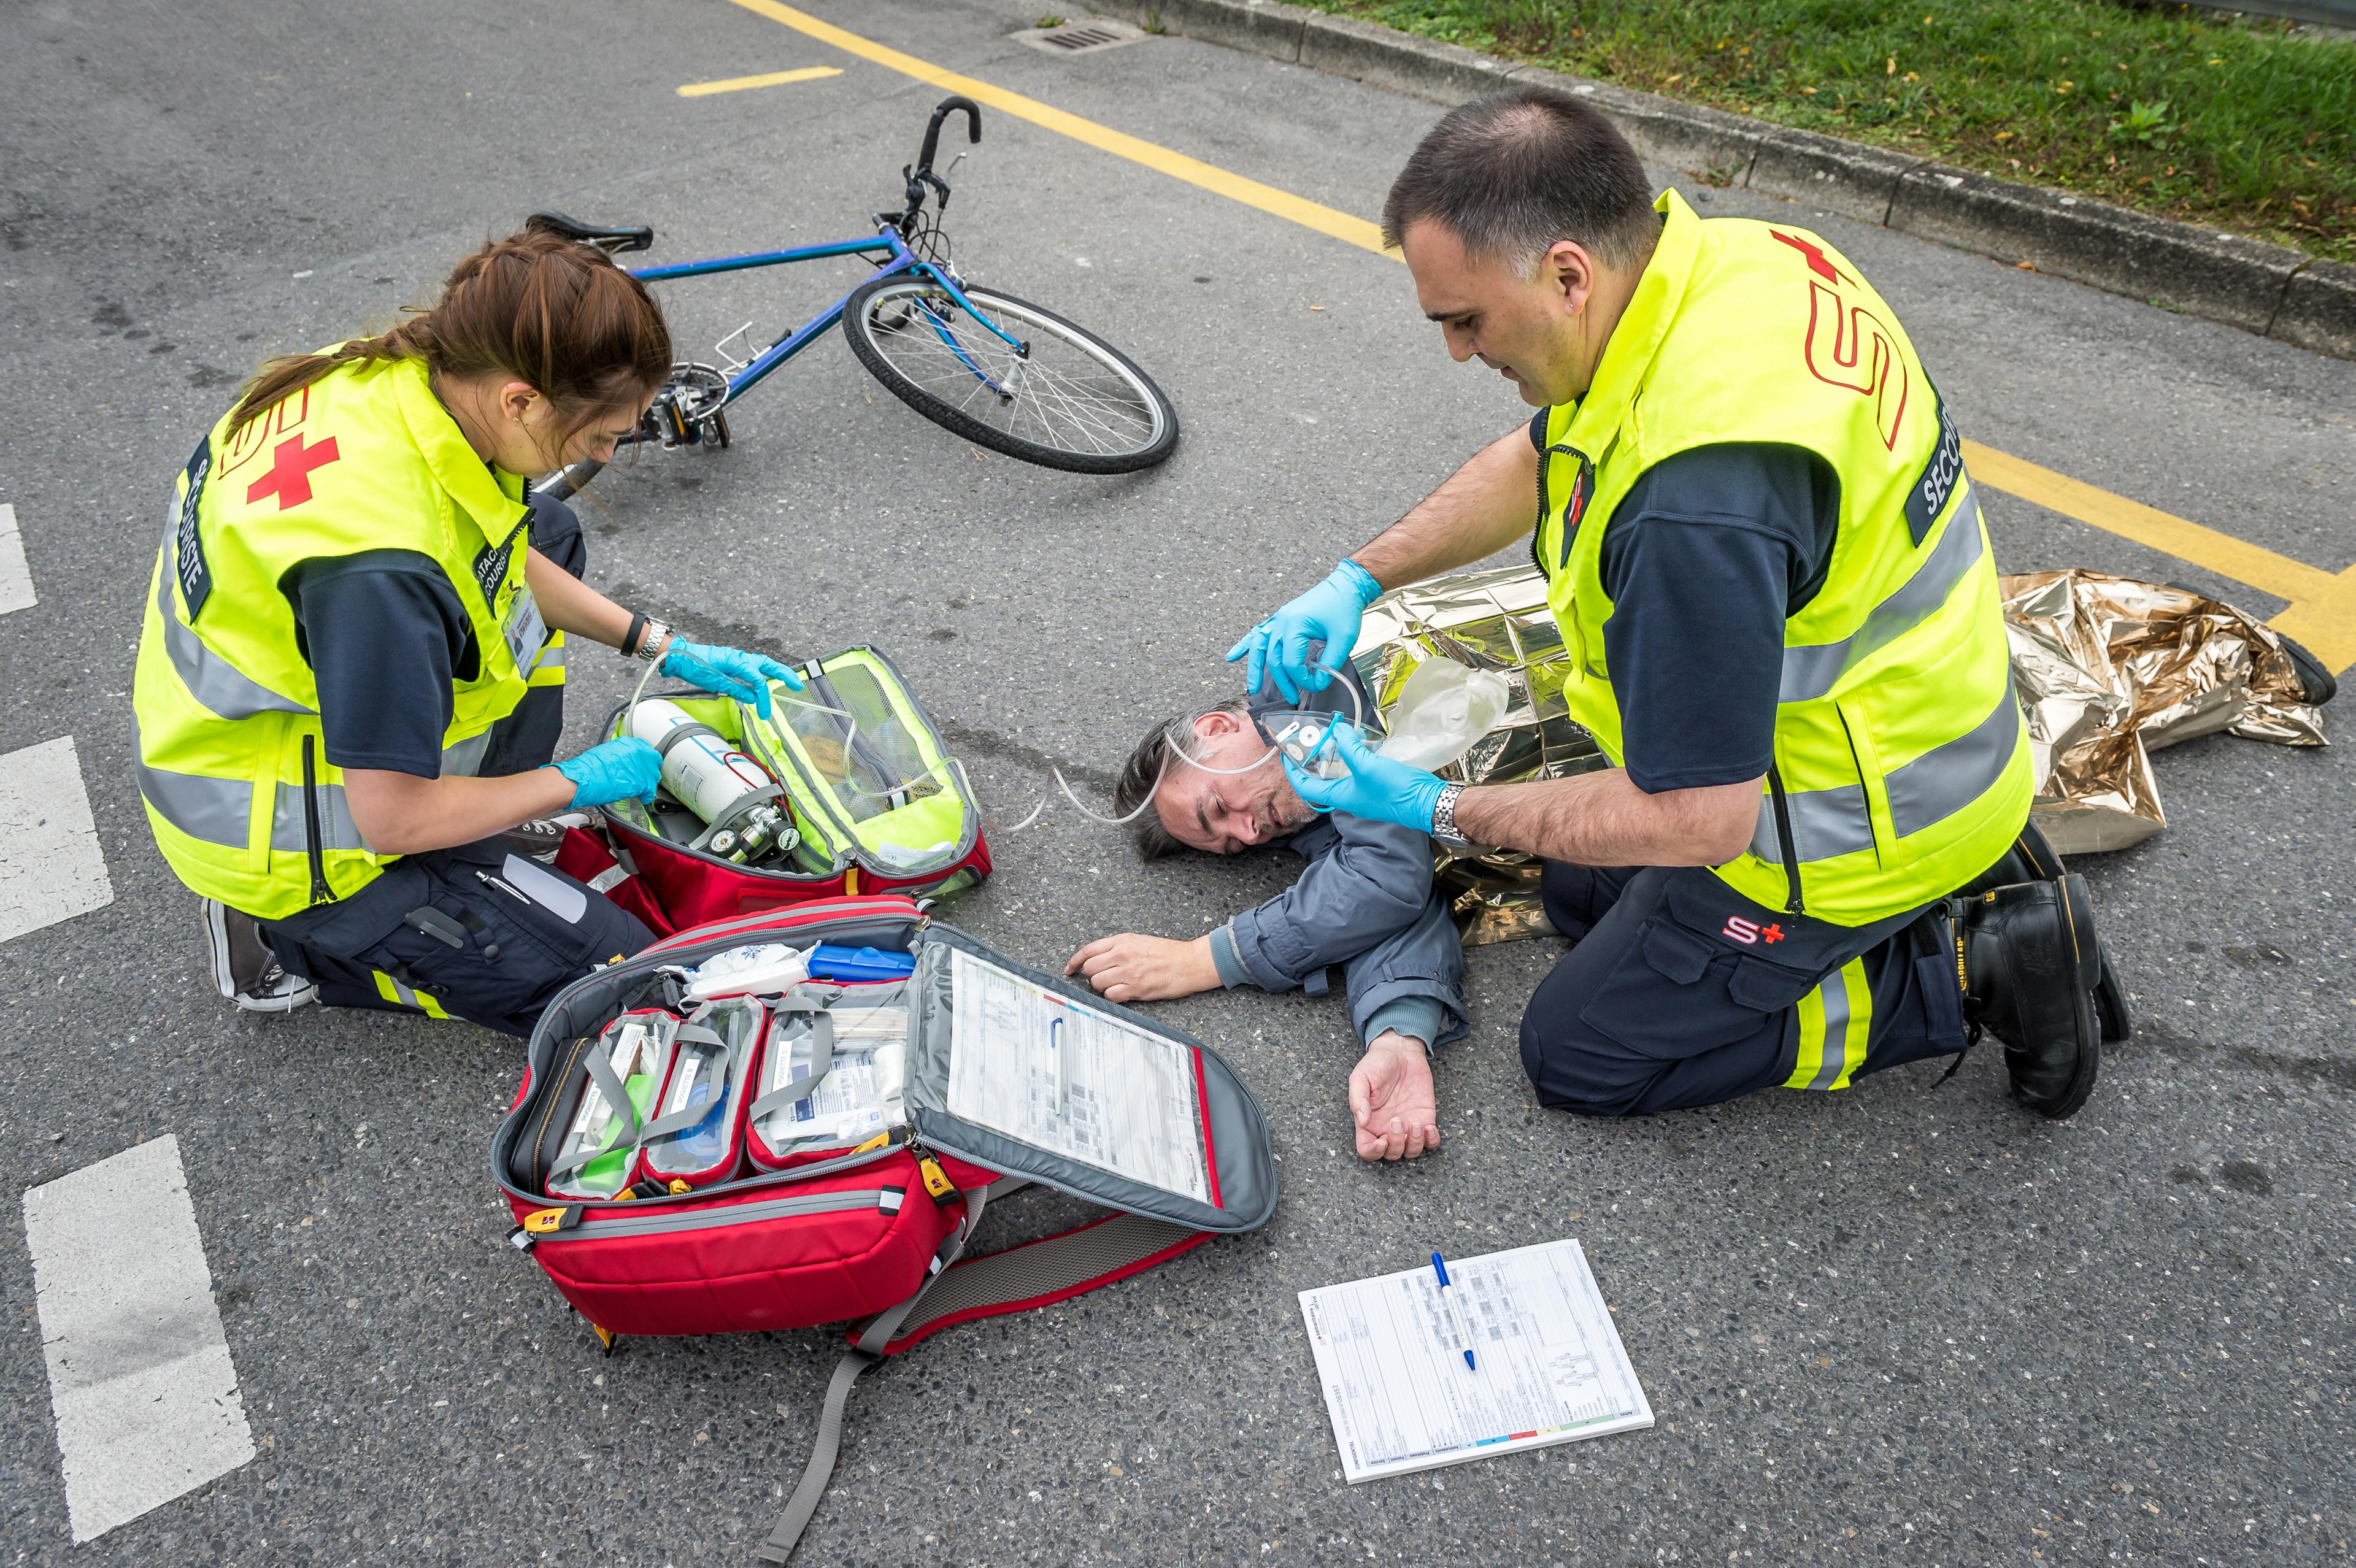 Exercice des samaritains : un cycliste accidenté est allongé sur la route à côté de son vélo, deux samaritains le soignent.